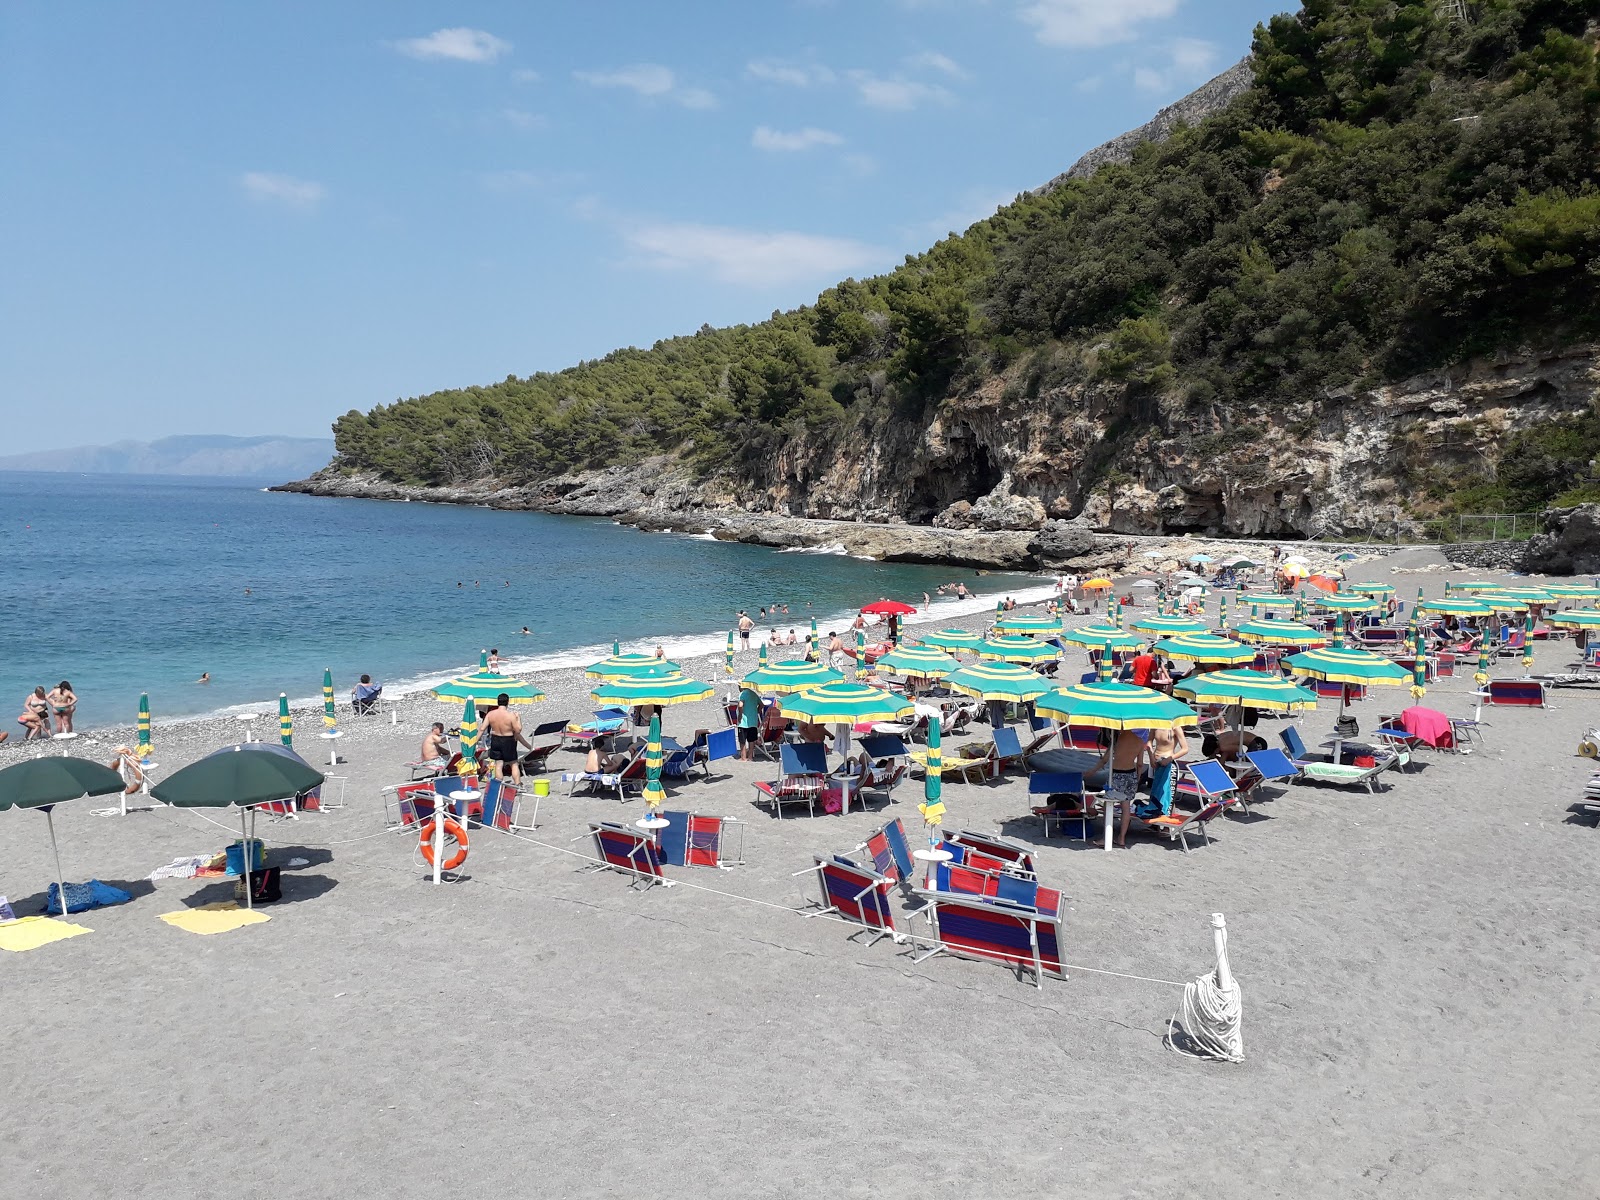 Valokuva Spiaggia di Fiumicelloista. sijaitsee luonnonalueella